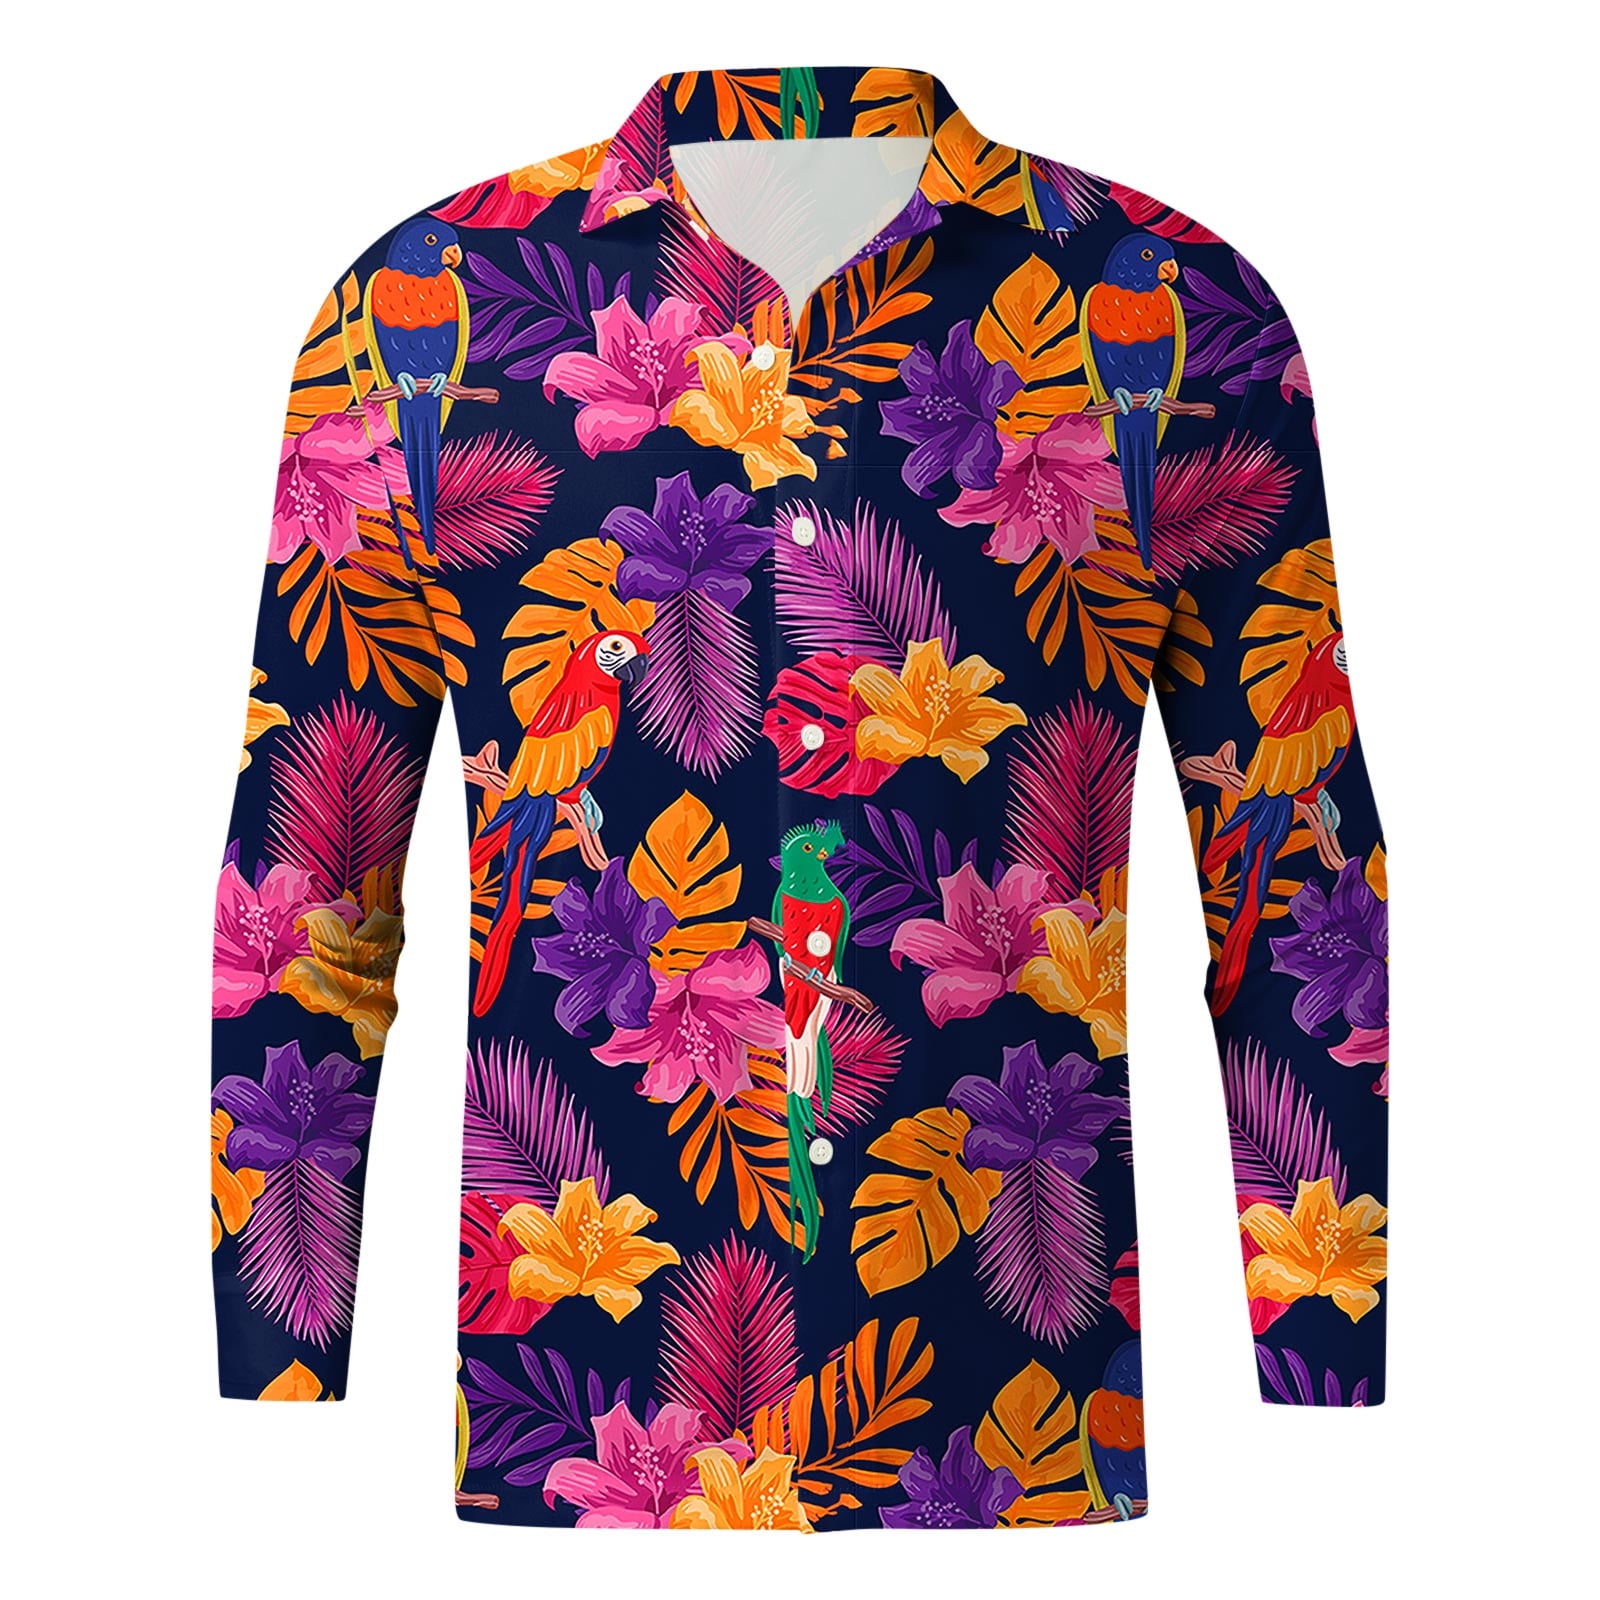 Buy CeaZoly Men's Colorful Fish Clip Art T-Shirt Purple XXXL Online at  desertcartOMAN